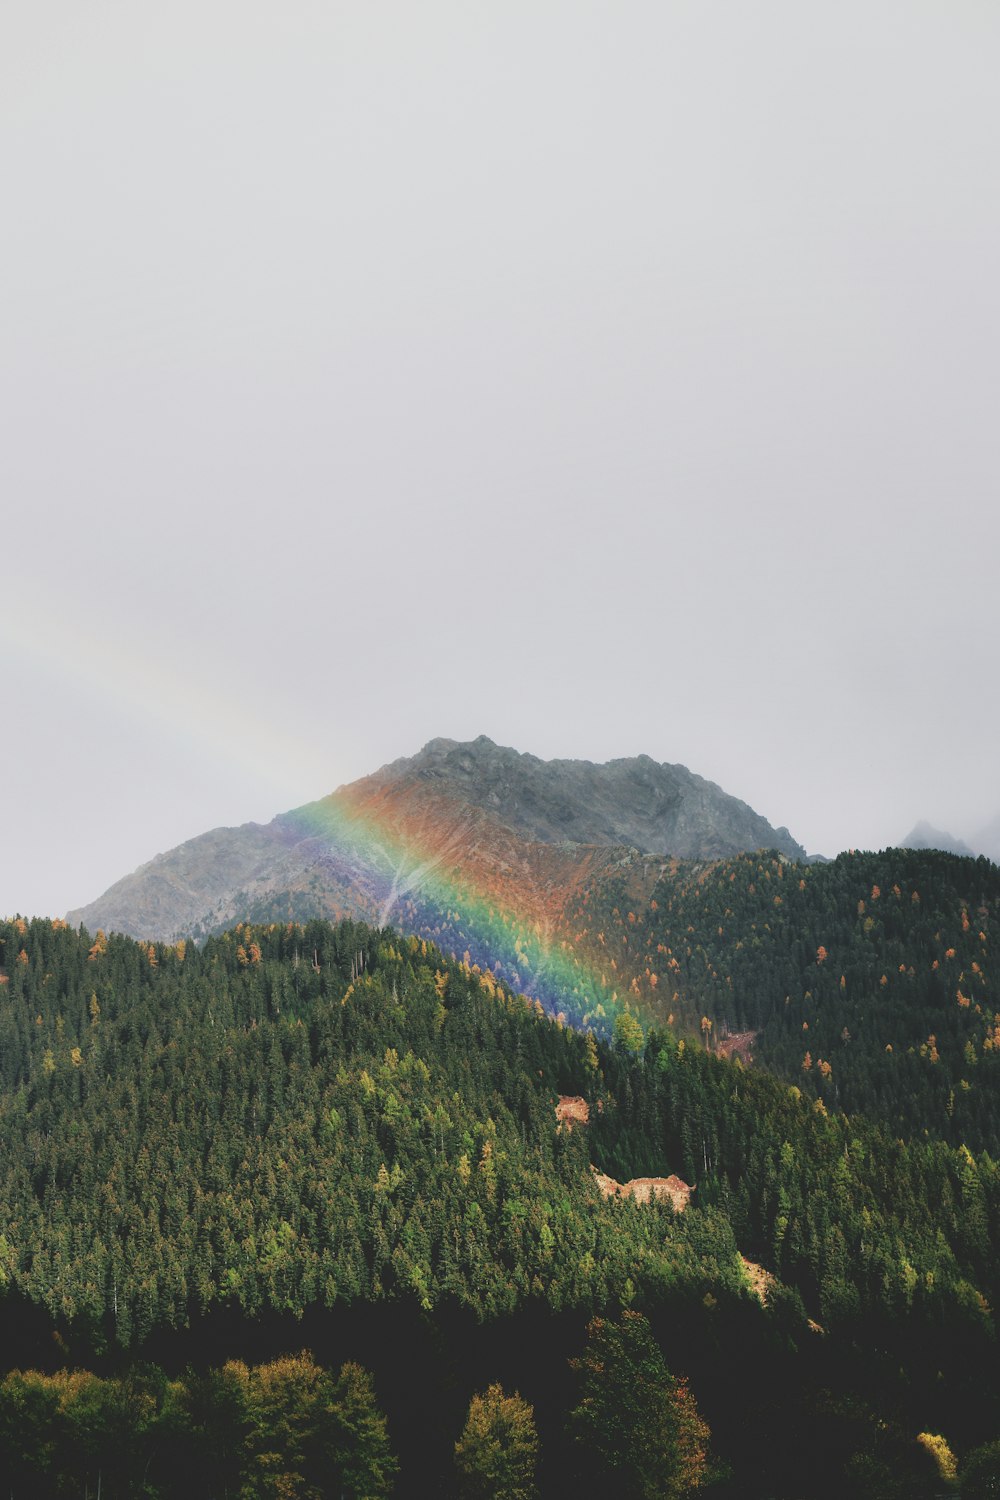 arco iris sobre una colina cubierta de árboles verdes